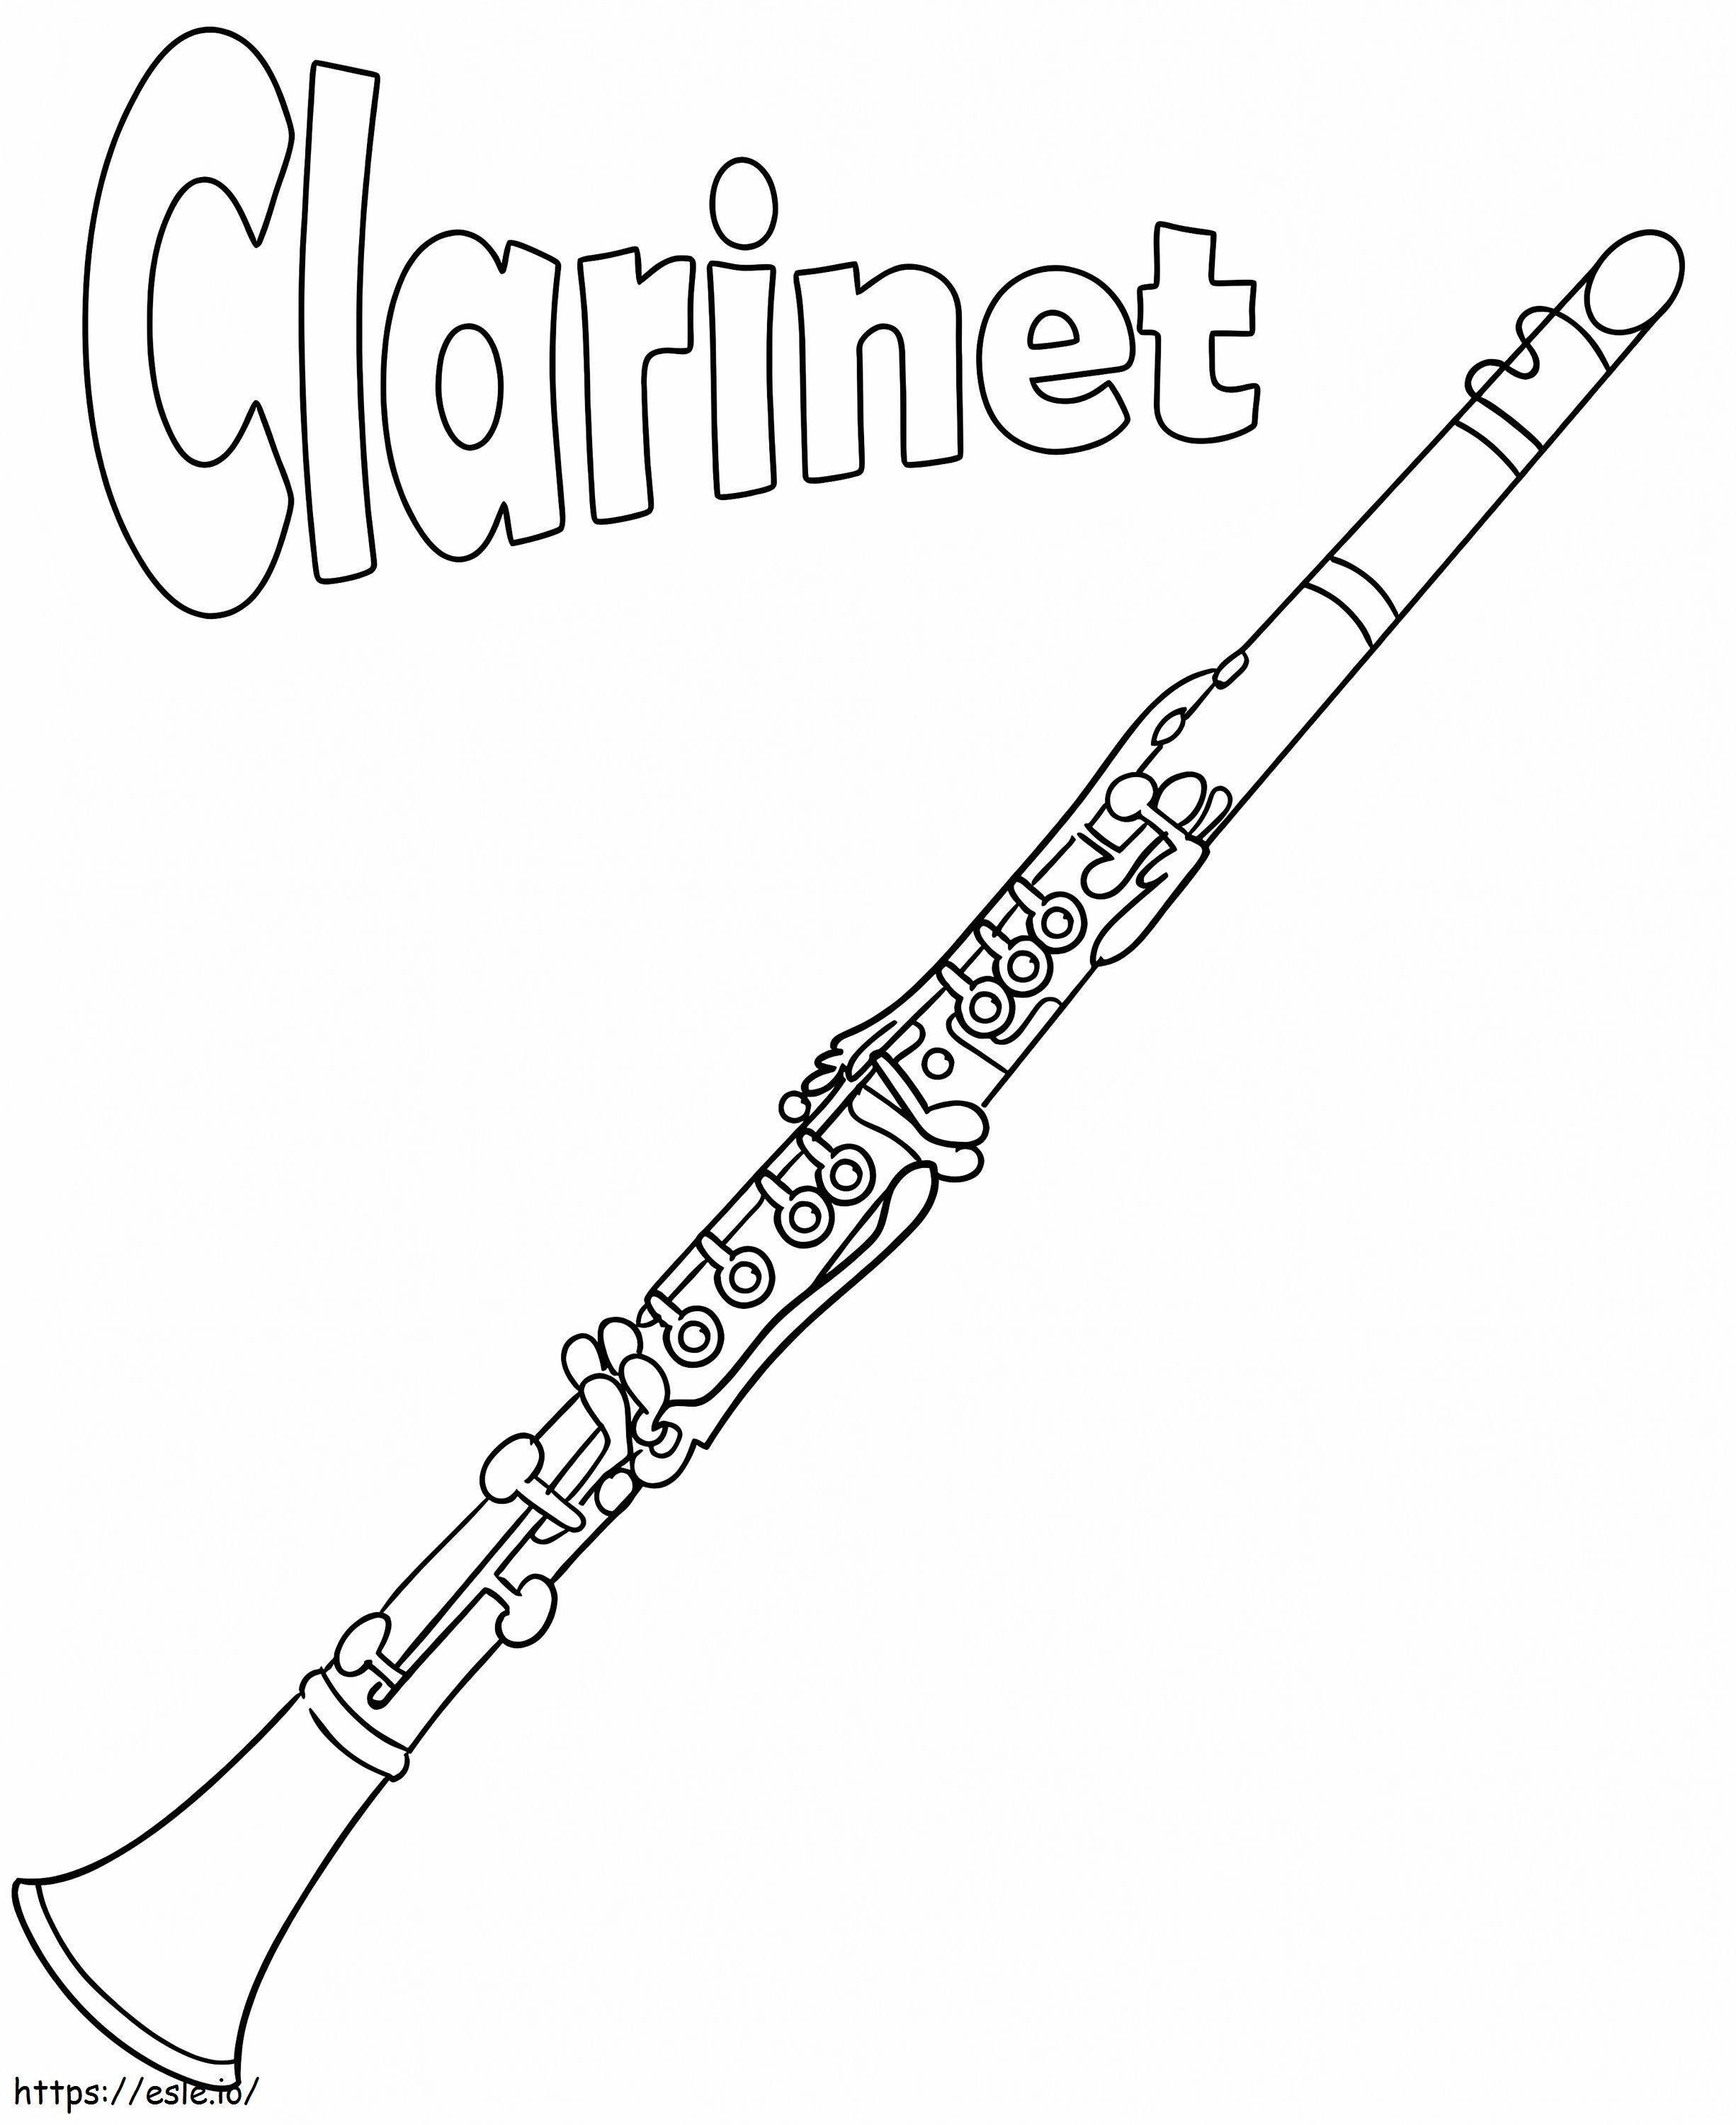 Clarinet imprimabil de colorat